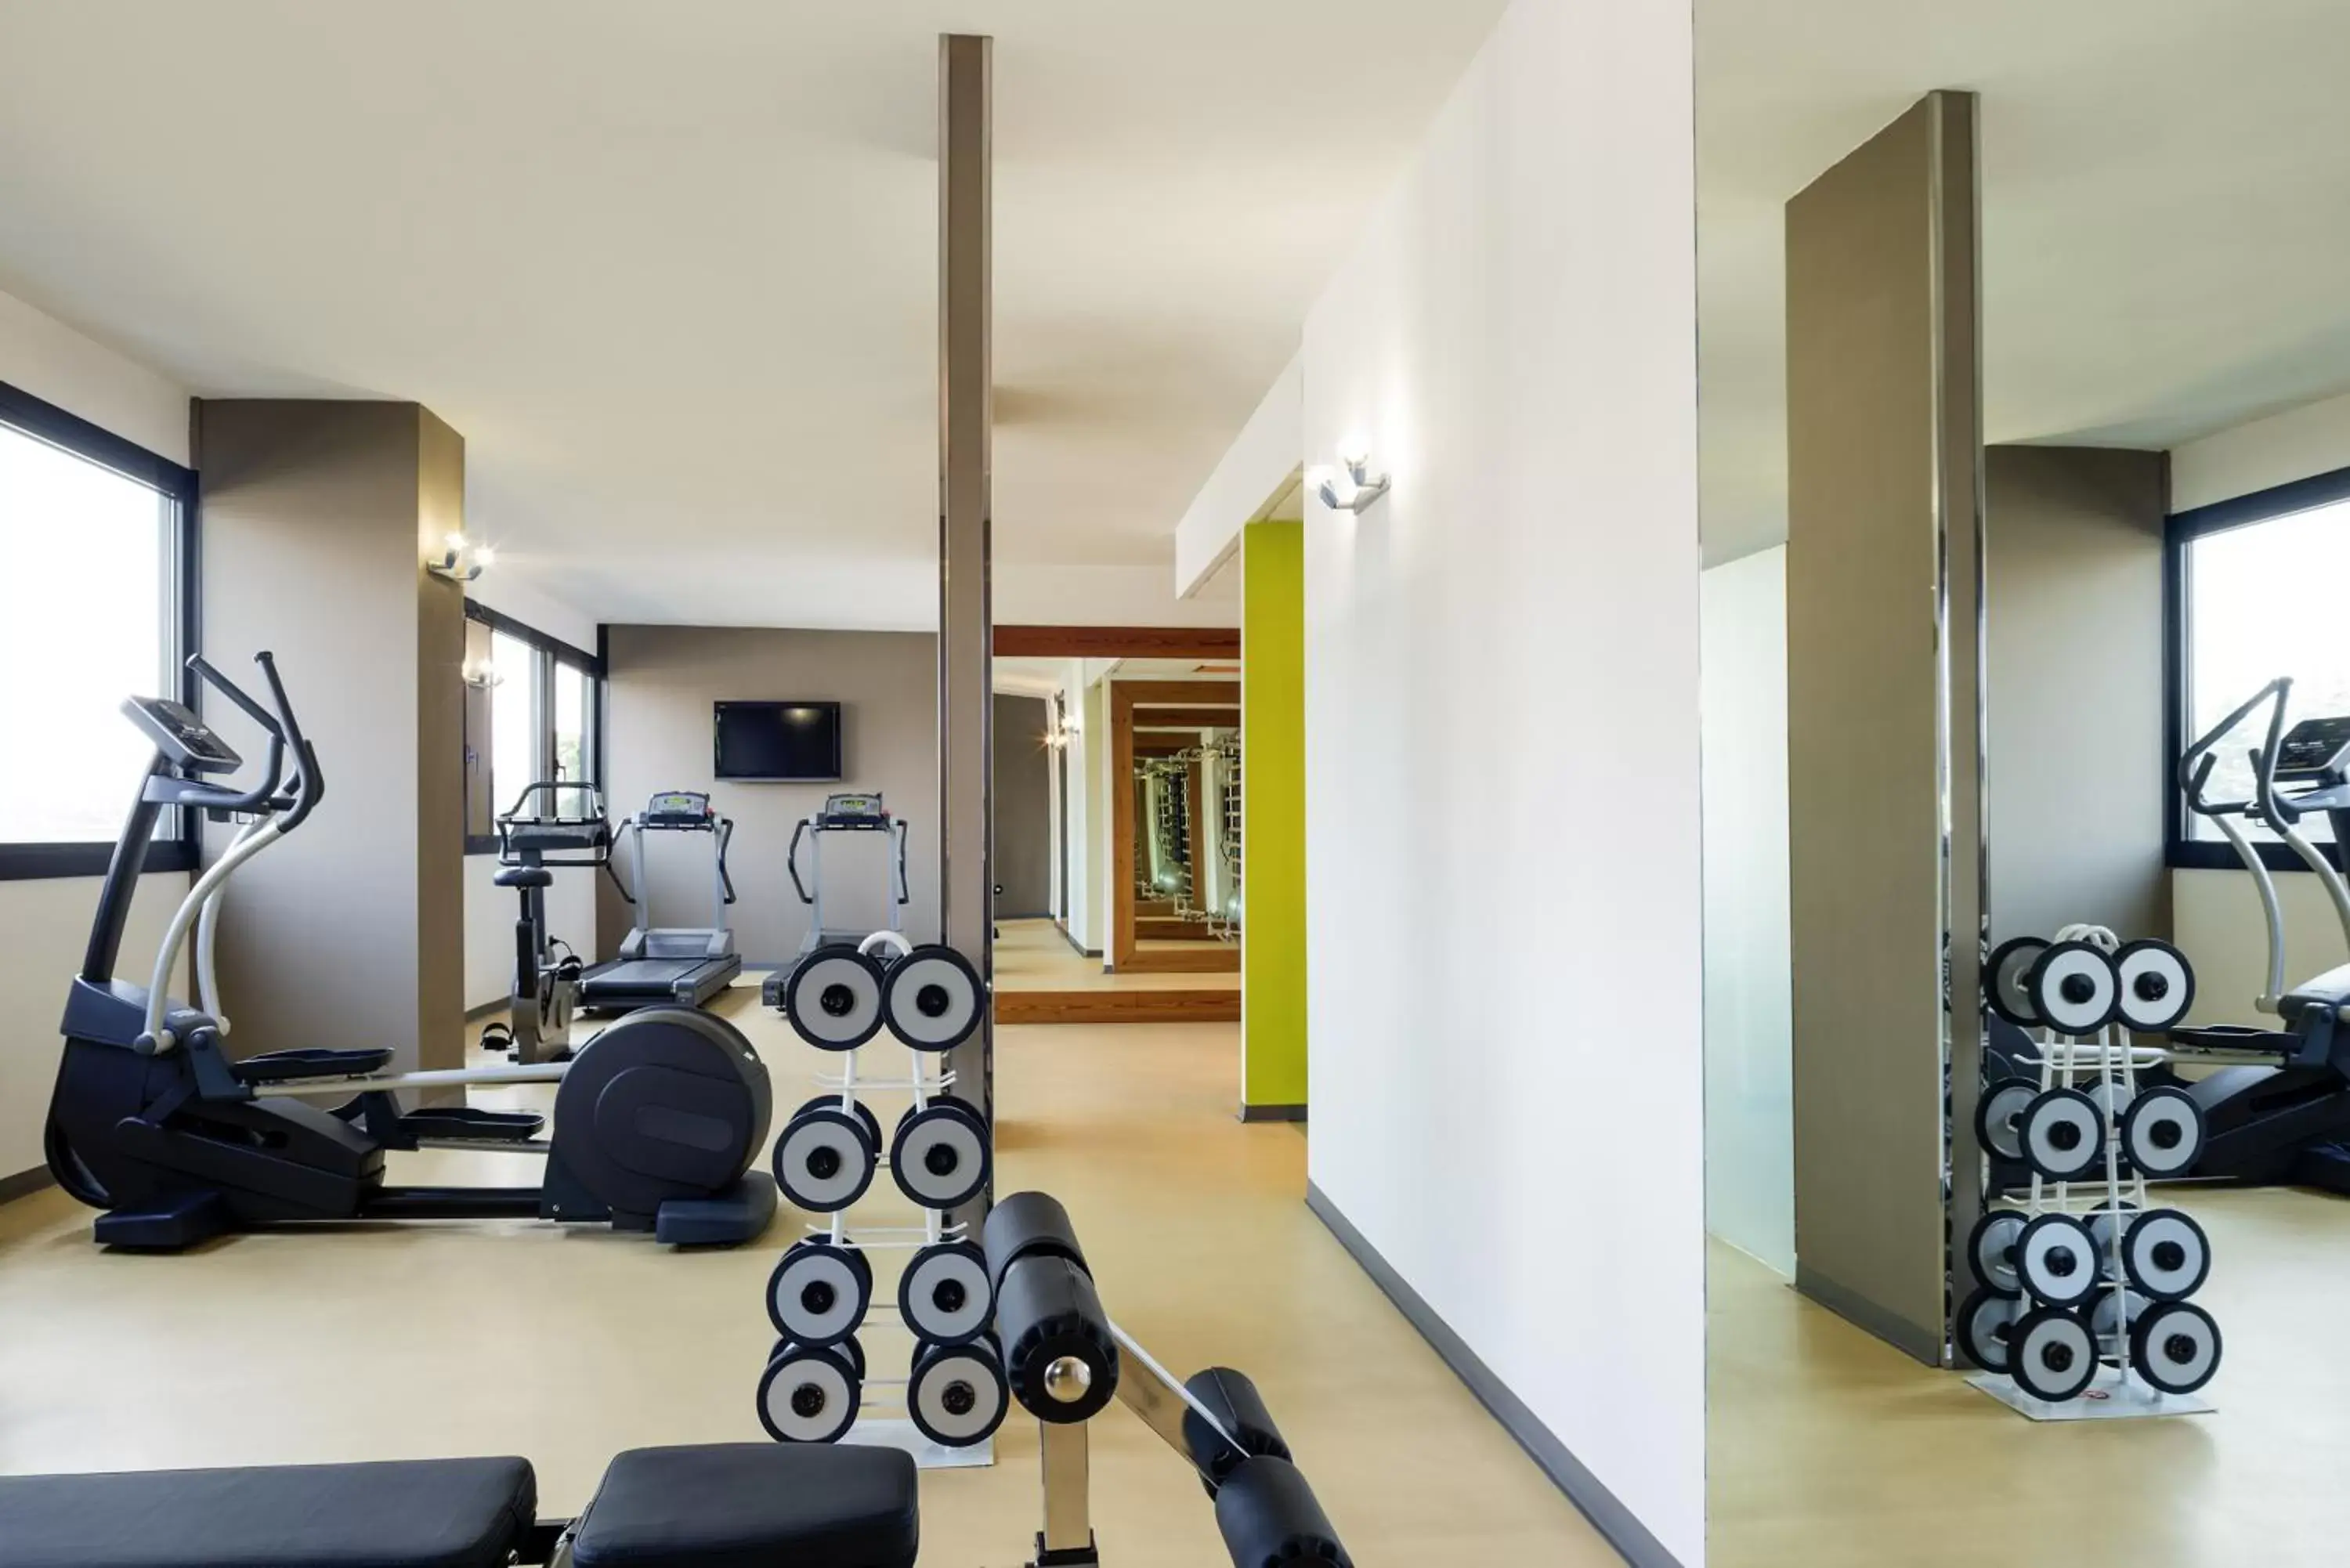 Fitness centre/facilities, Fitness Center/Facilities in Mercure Milano Agrate Brianza